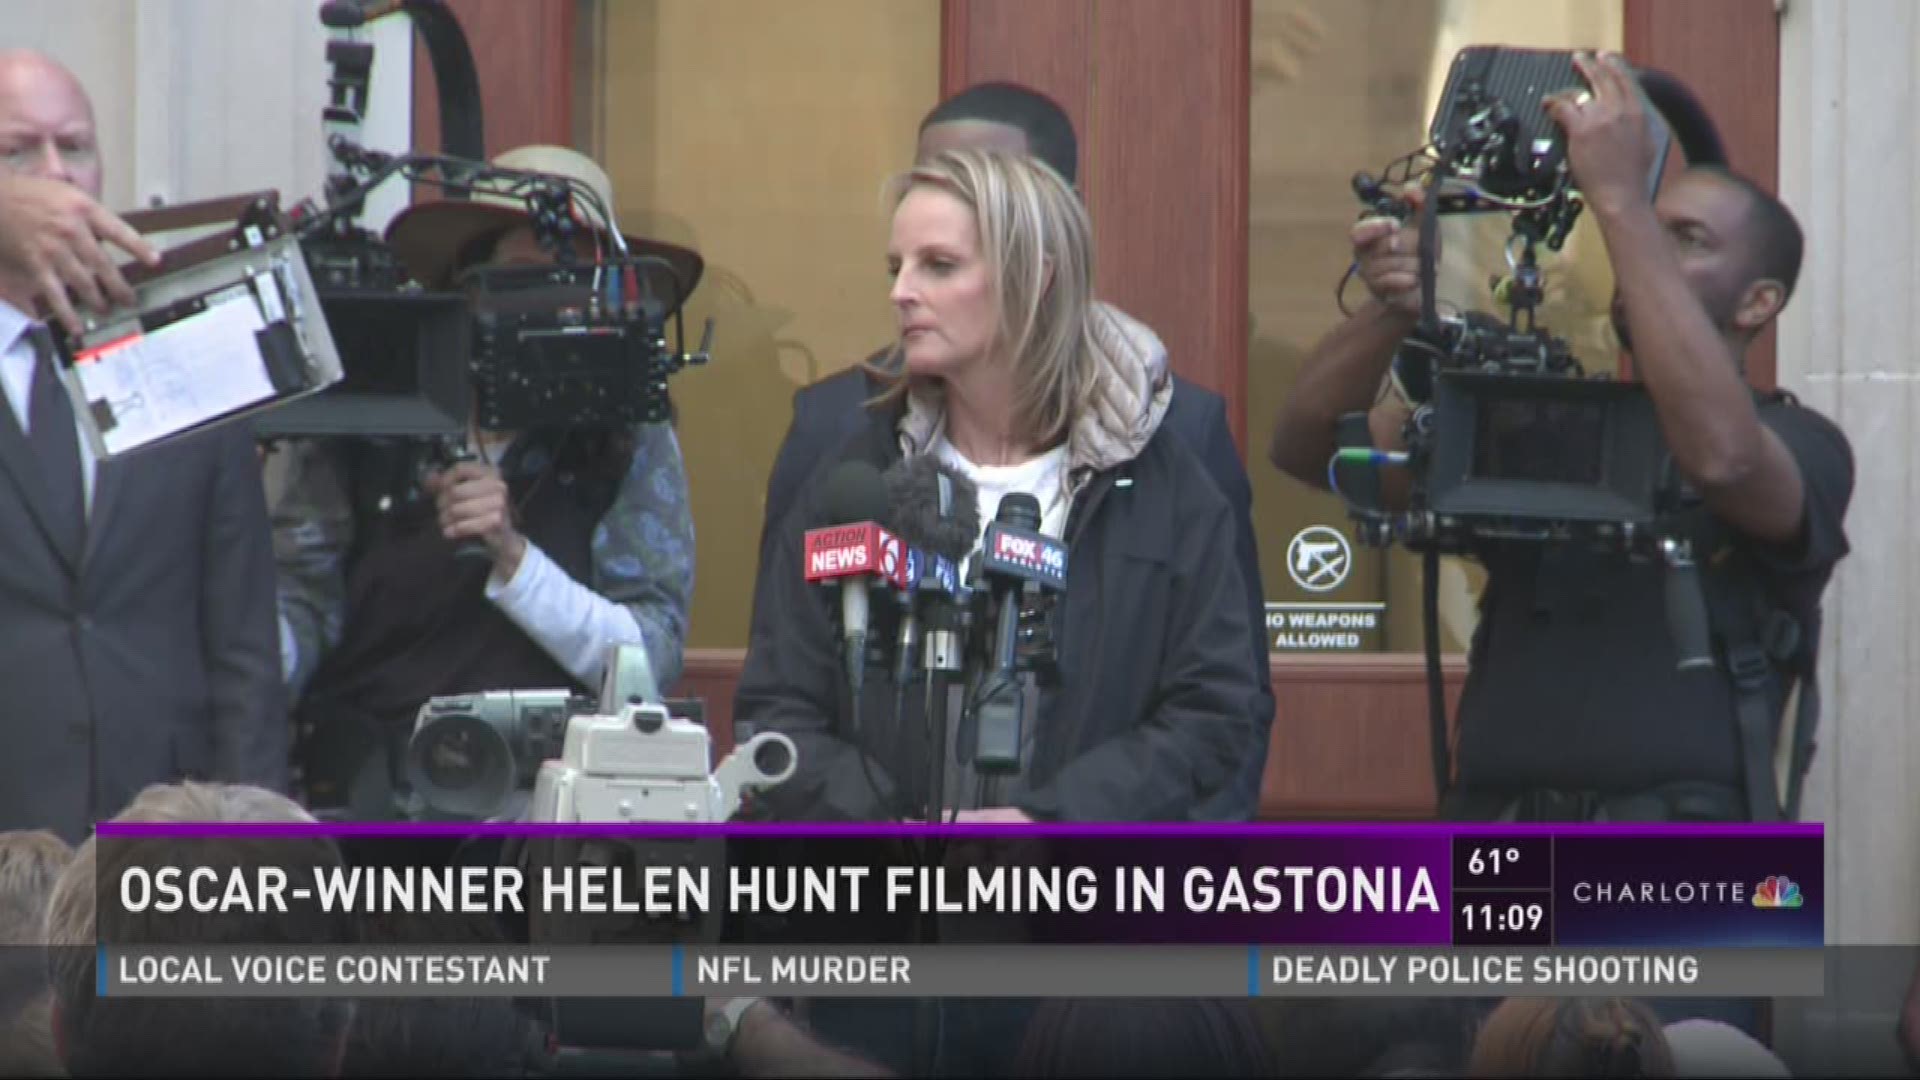 Oscar-winner Helen Hunt filing in Gastonia